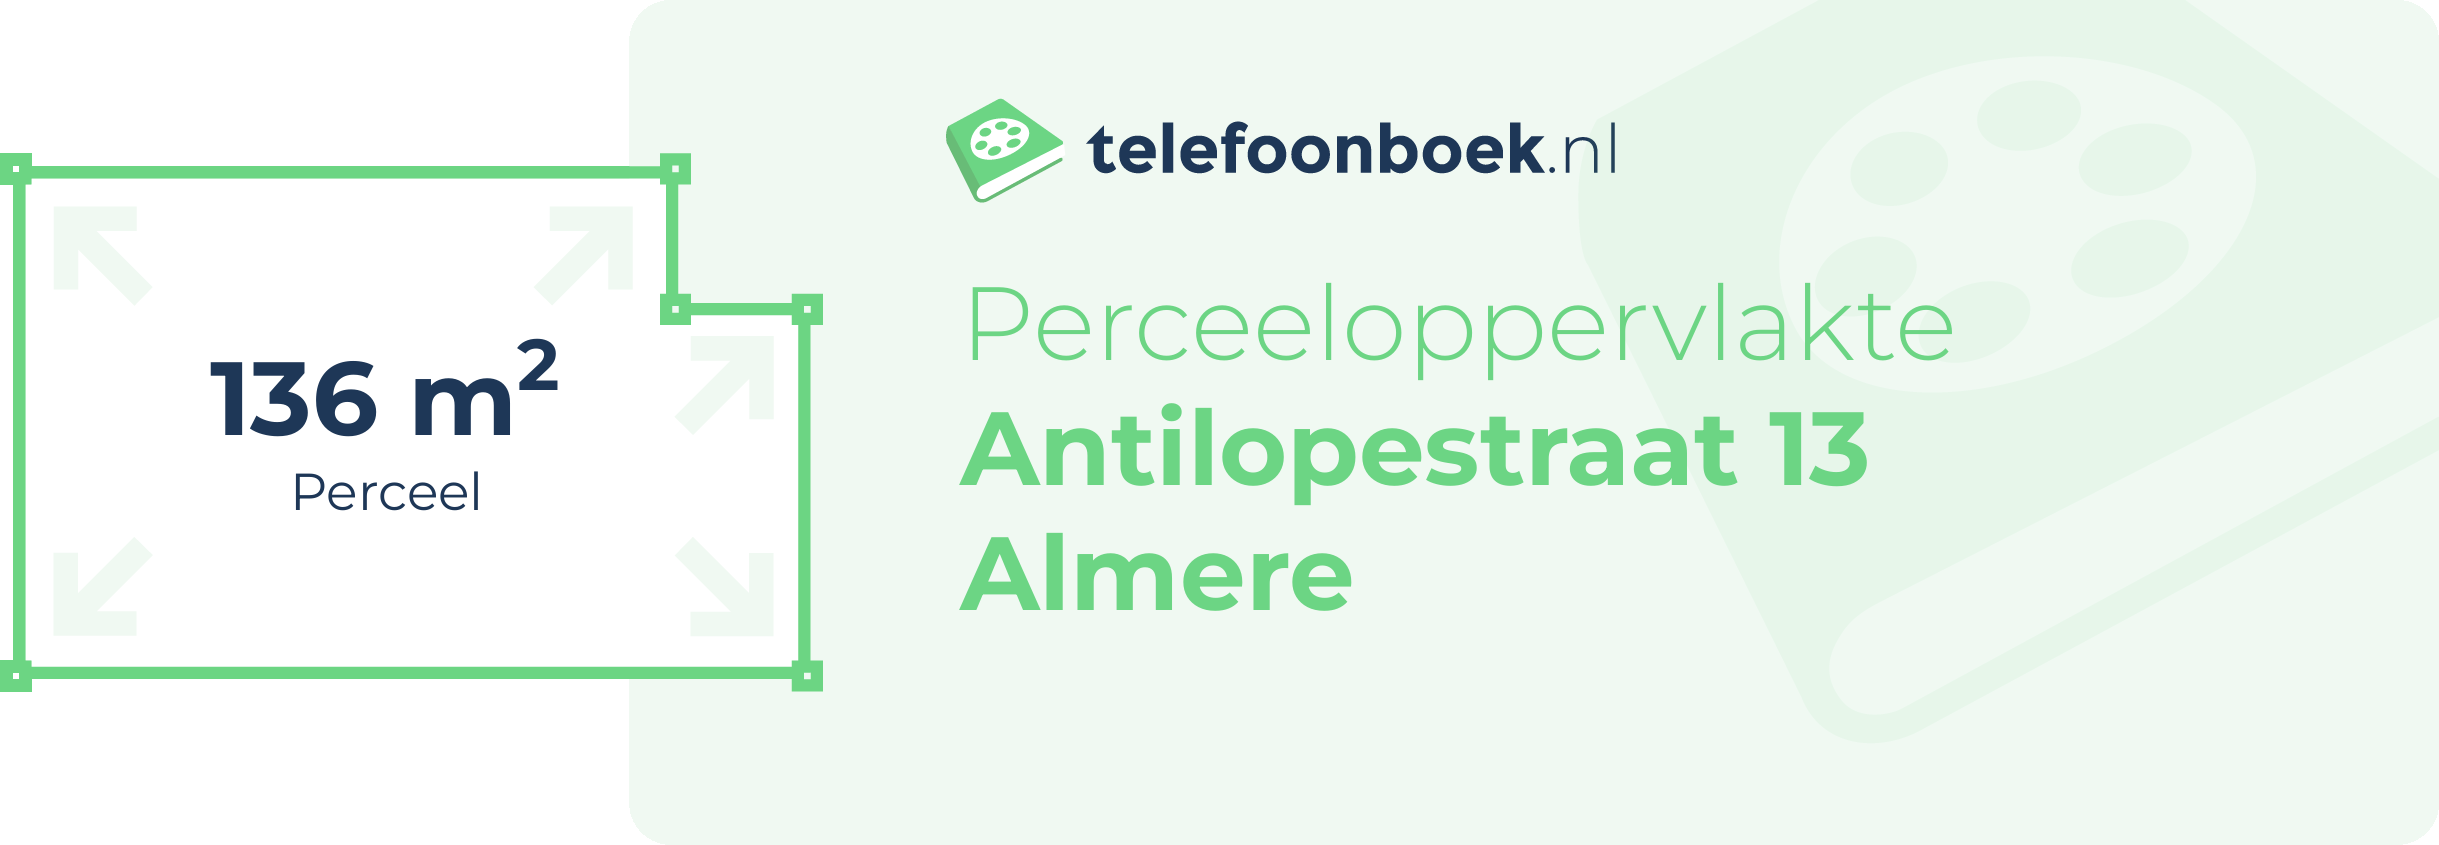 Perceeloppervlakte Antilopestraat 13 Almere